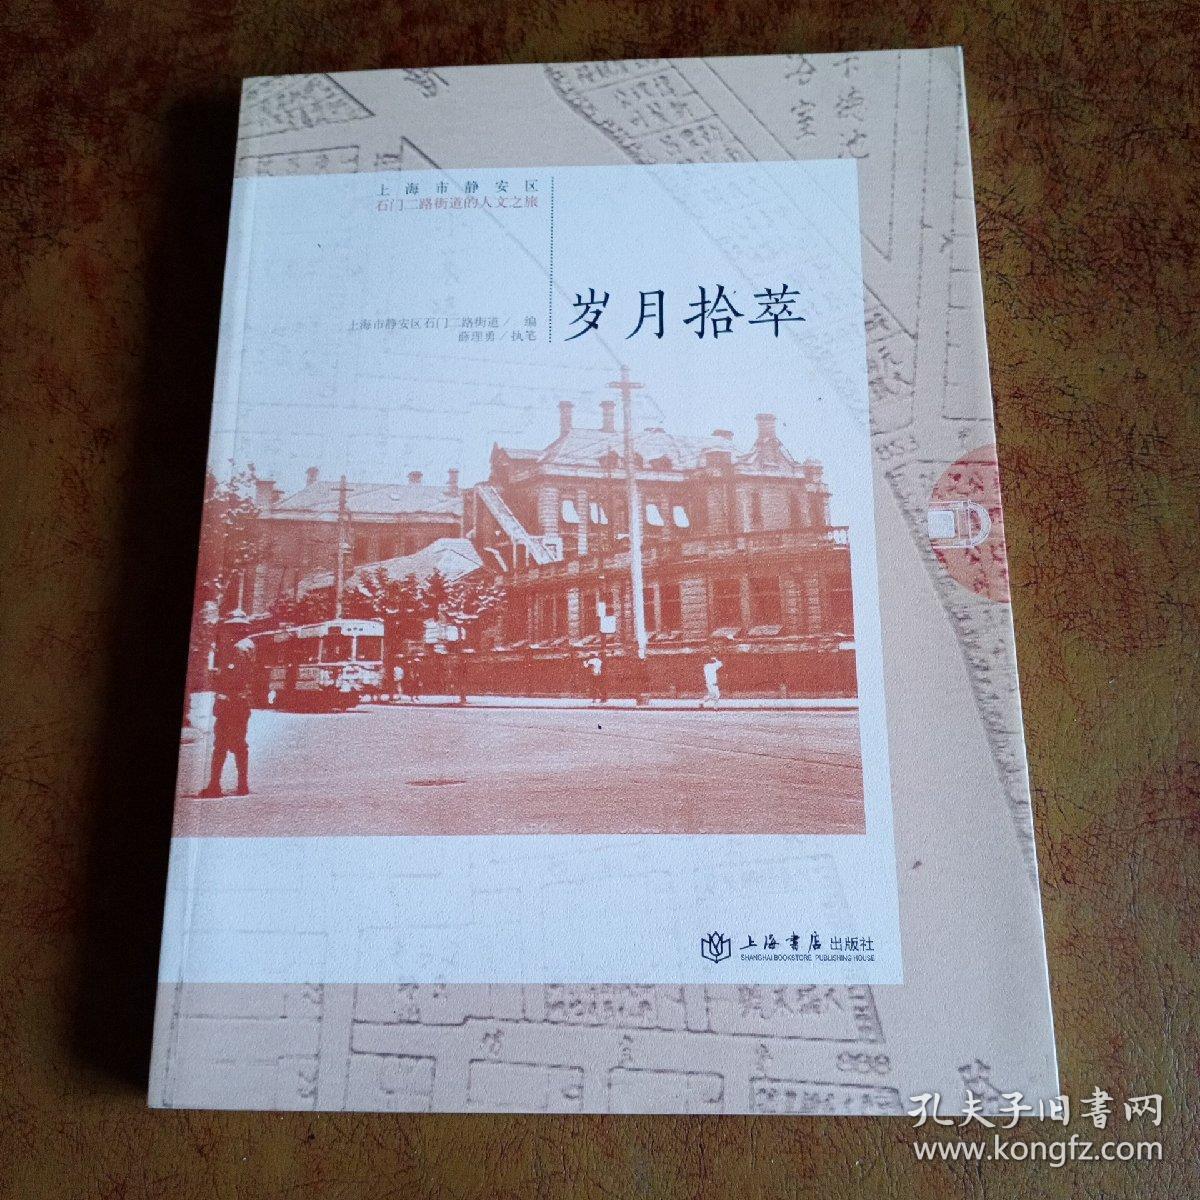 岁月拾萃 : 上海市静安区石门二路街道的人文之旅  签名本